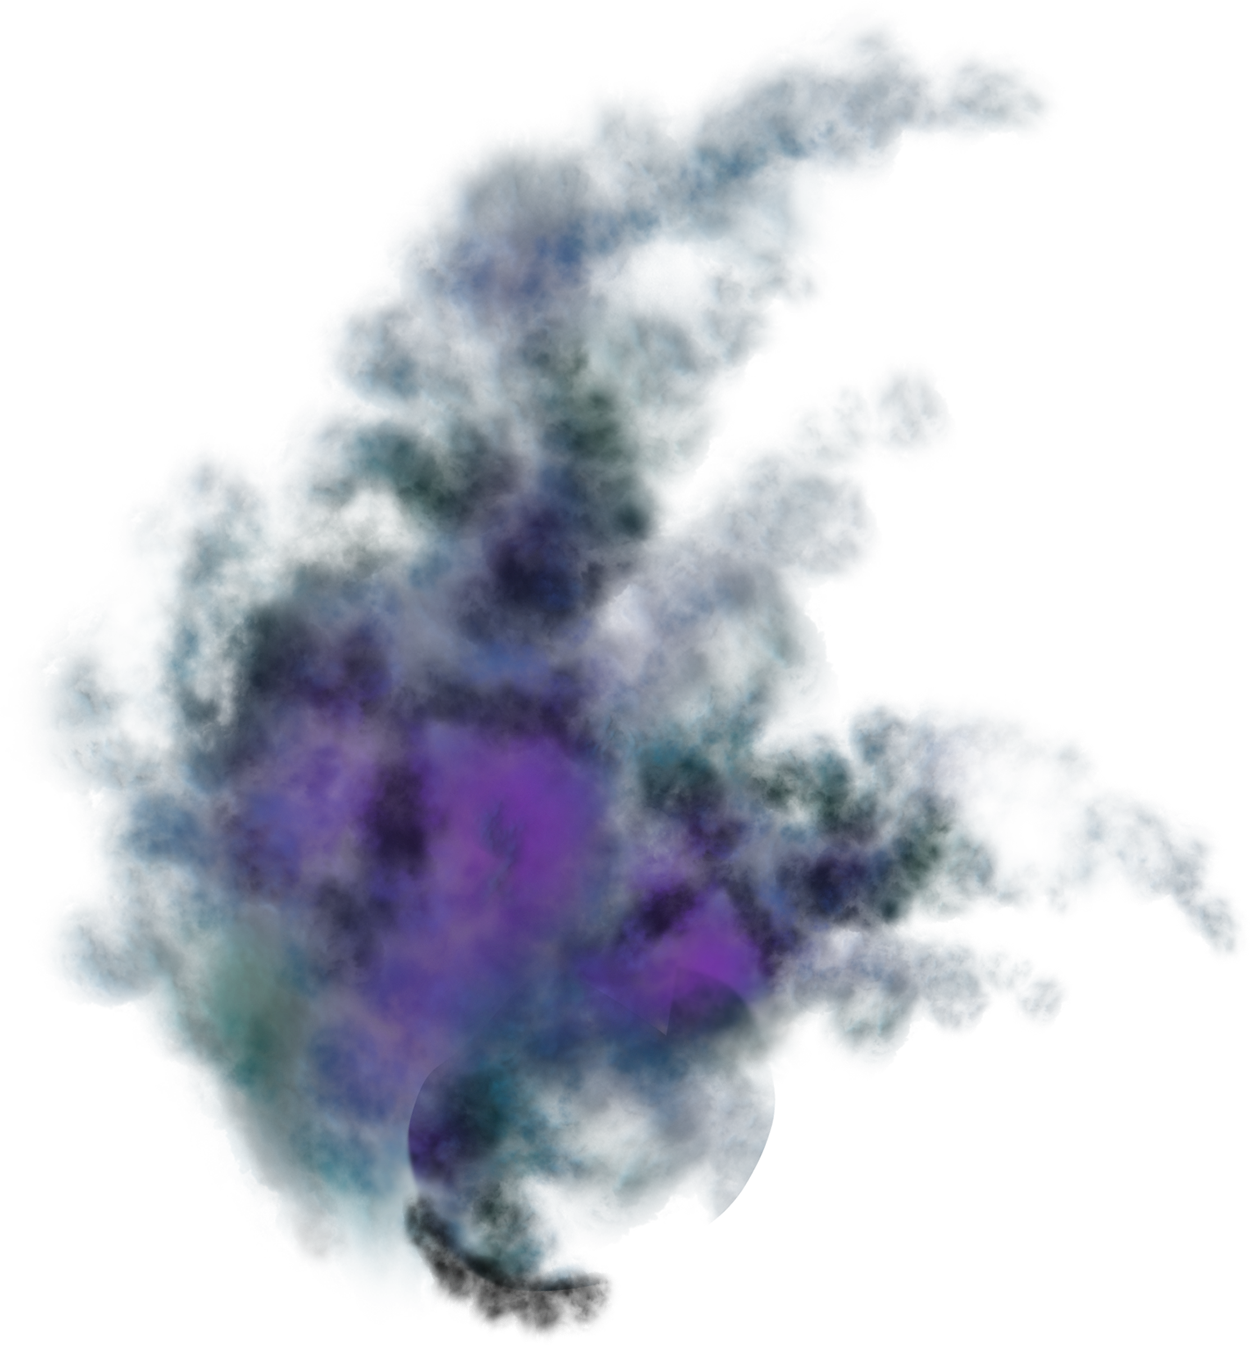 Cold nebula